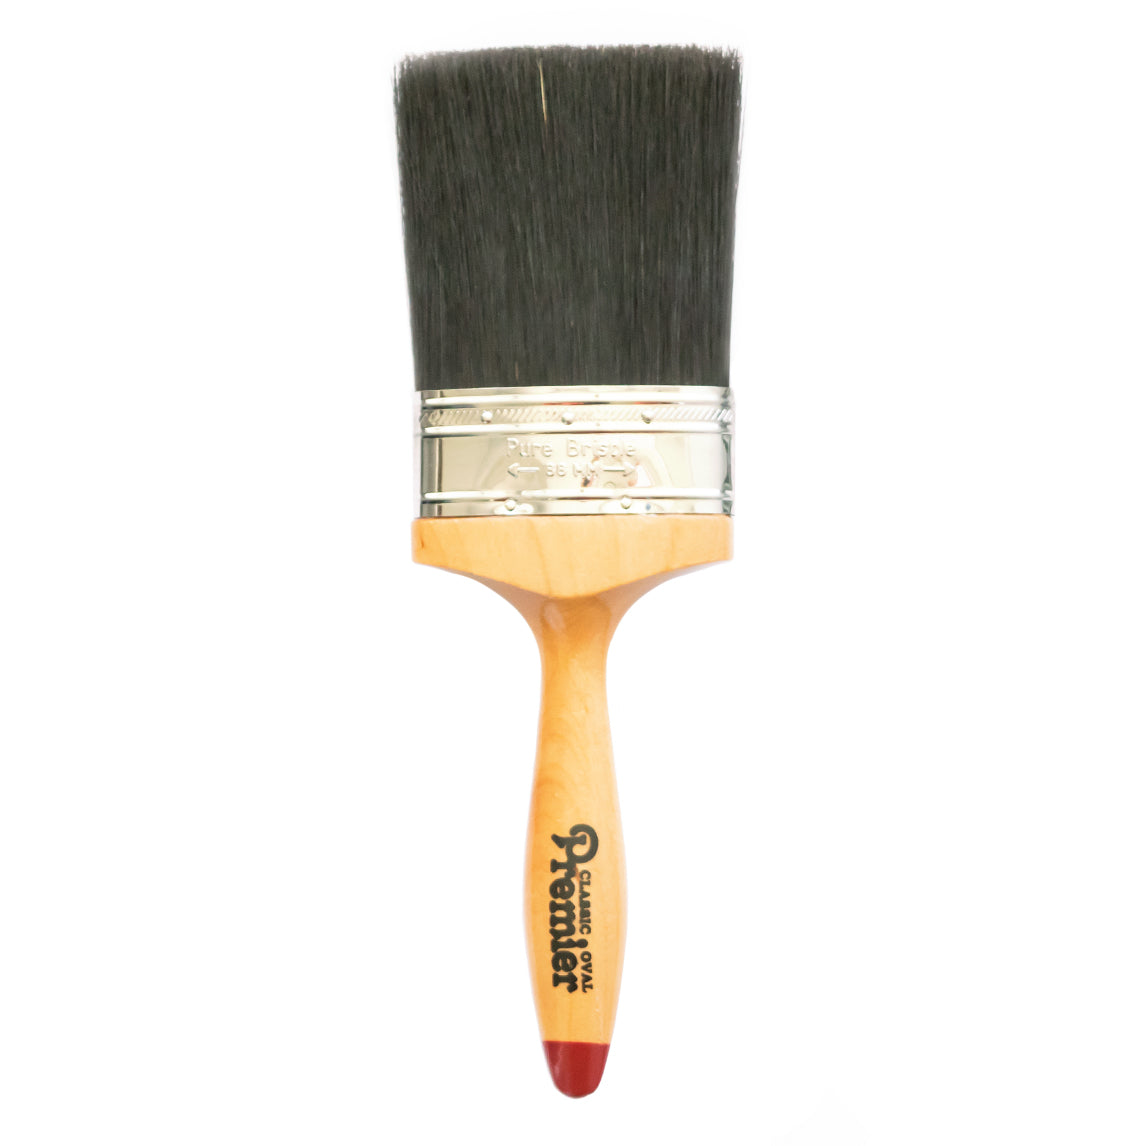 Classic Premier Oval Paint Brush